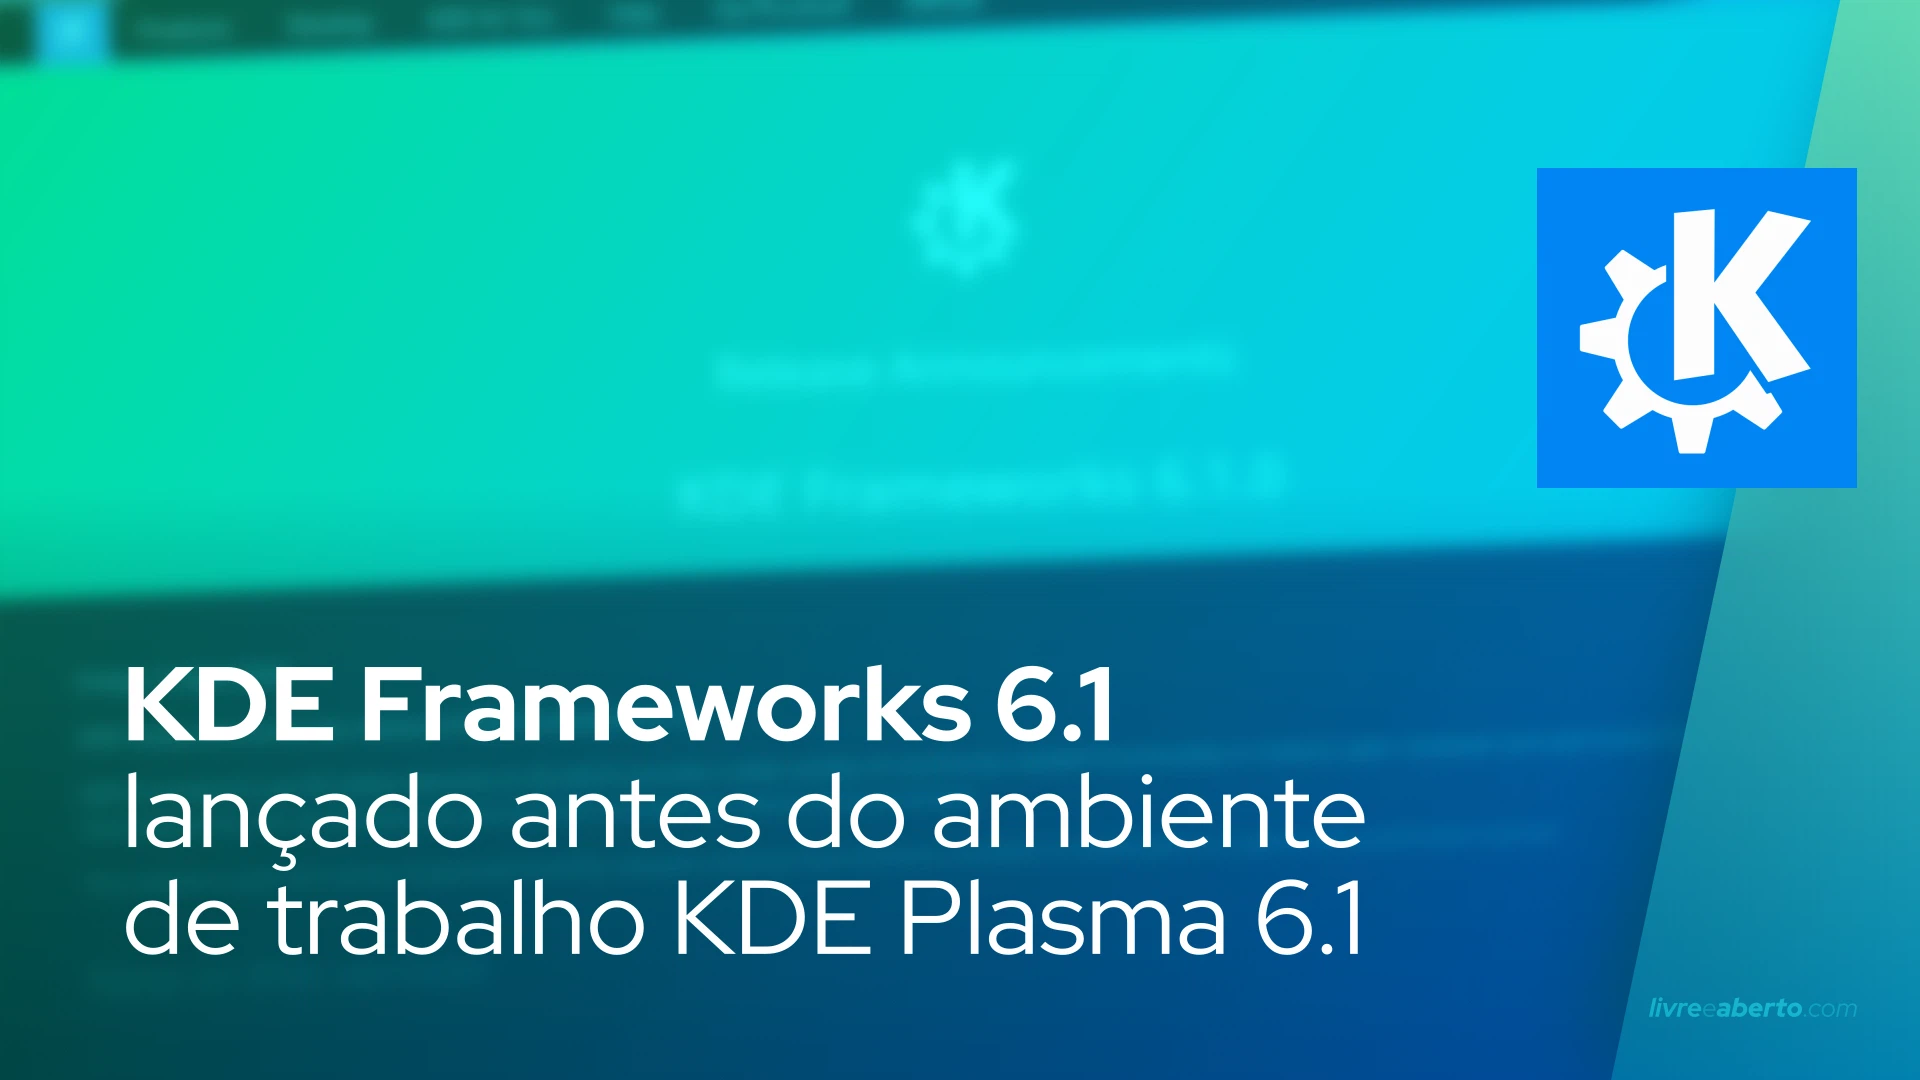 KDE Frameworks 6.1 lançado antes do ambiente de trabalho KDE Plasma 6.1